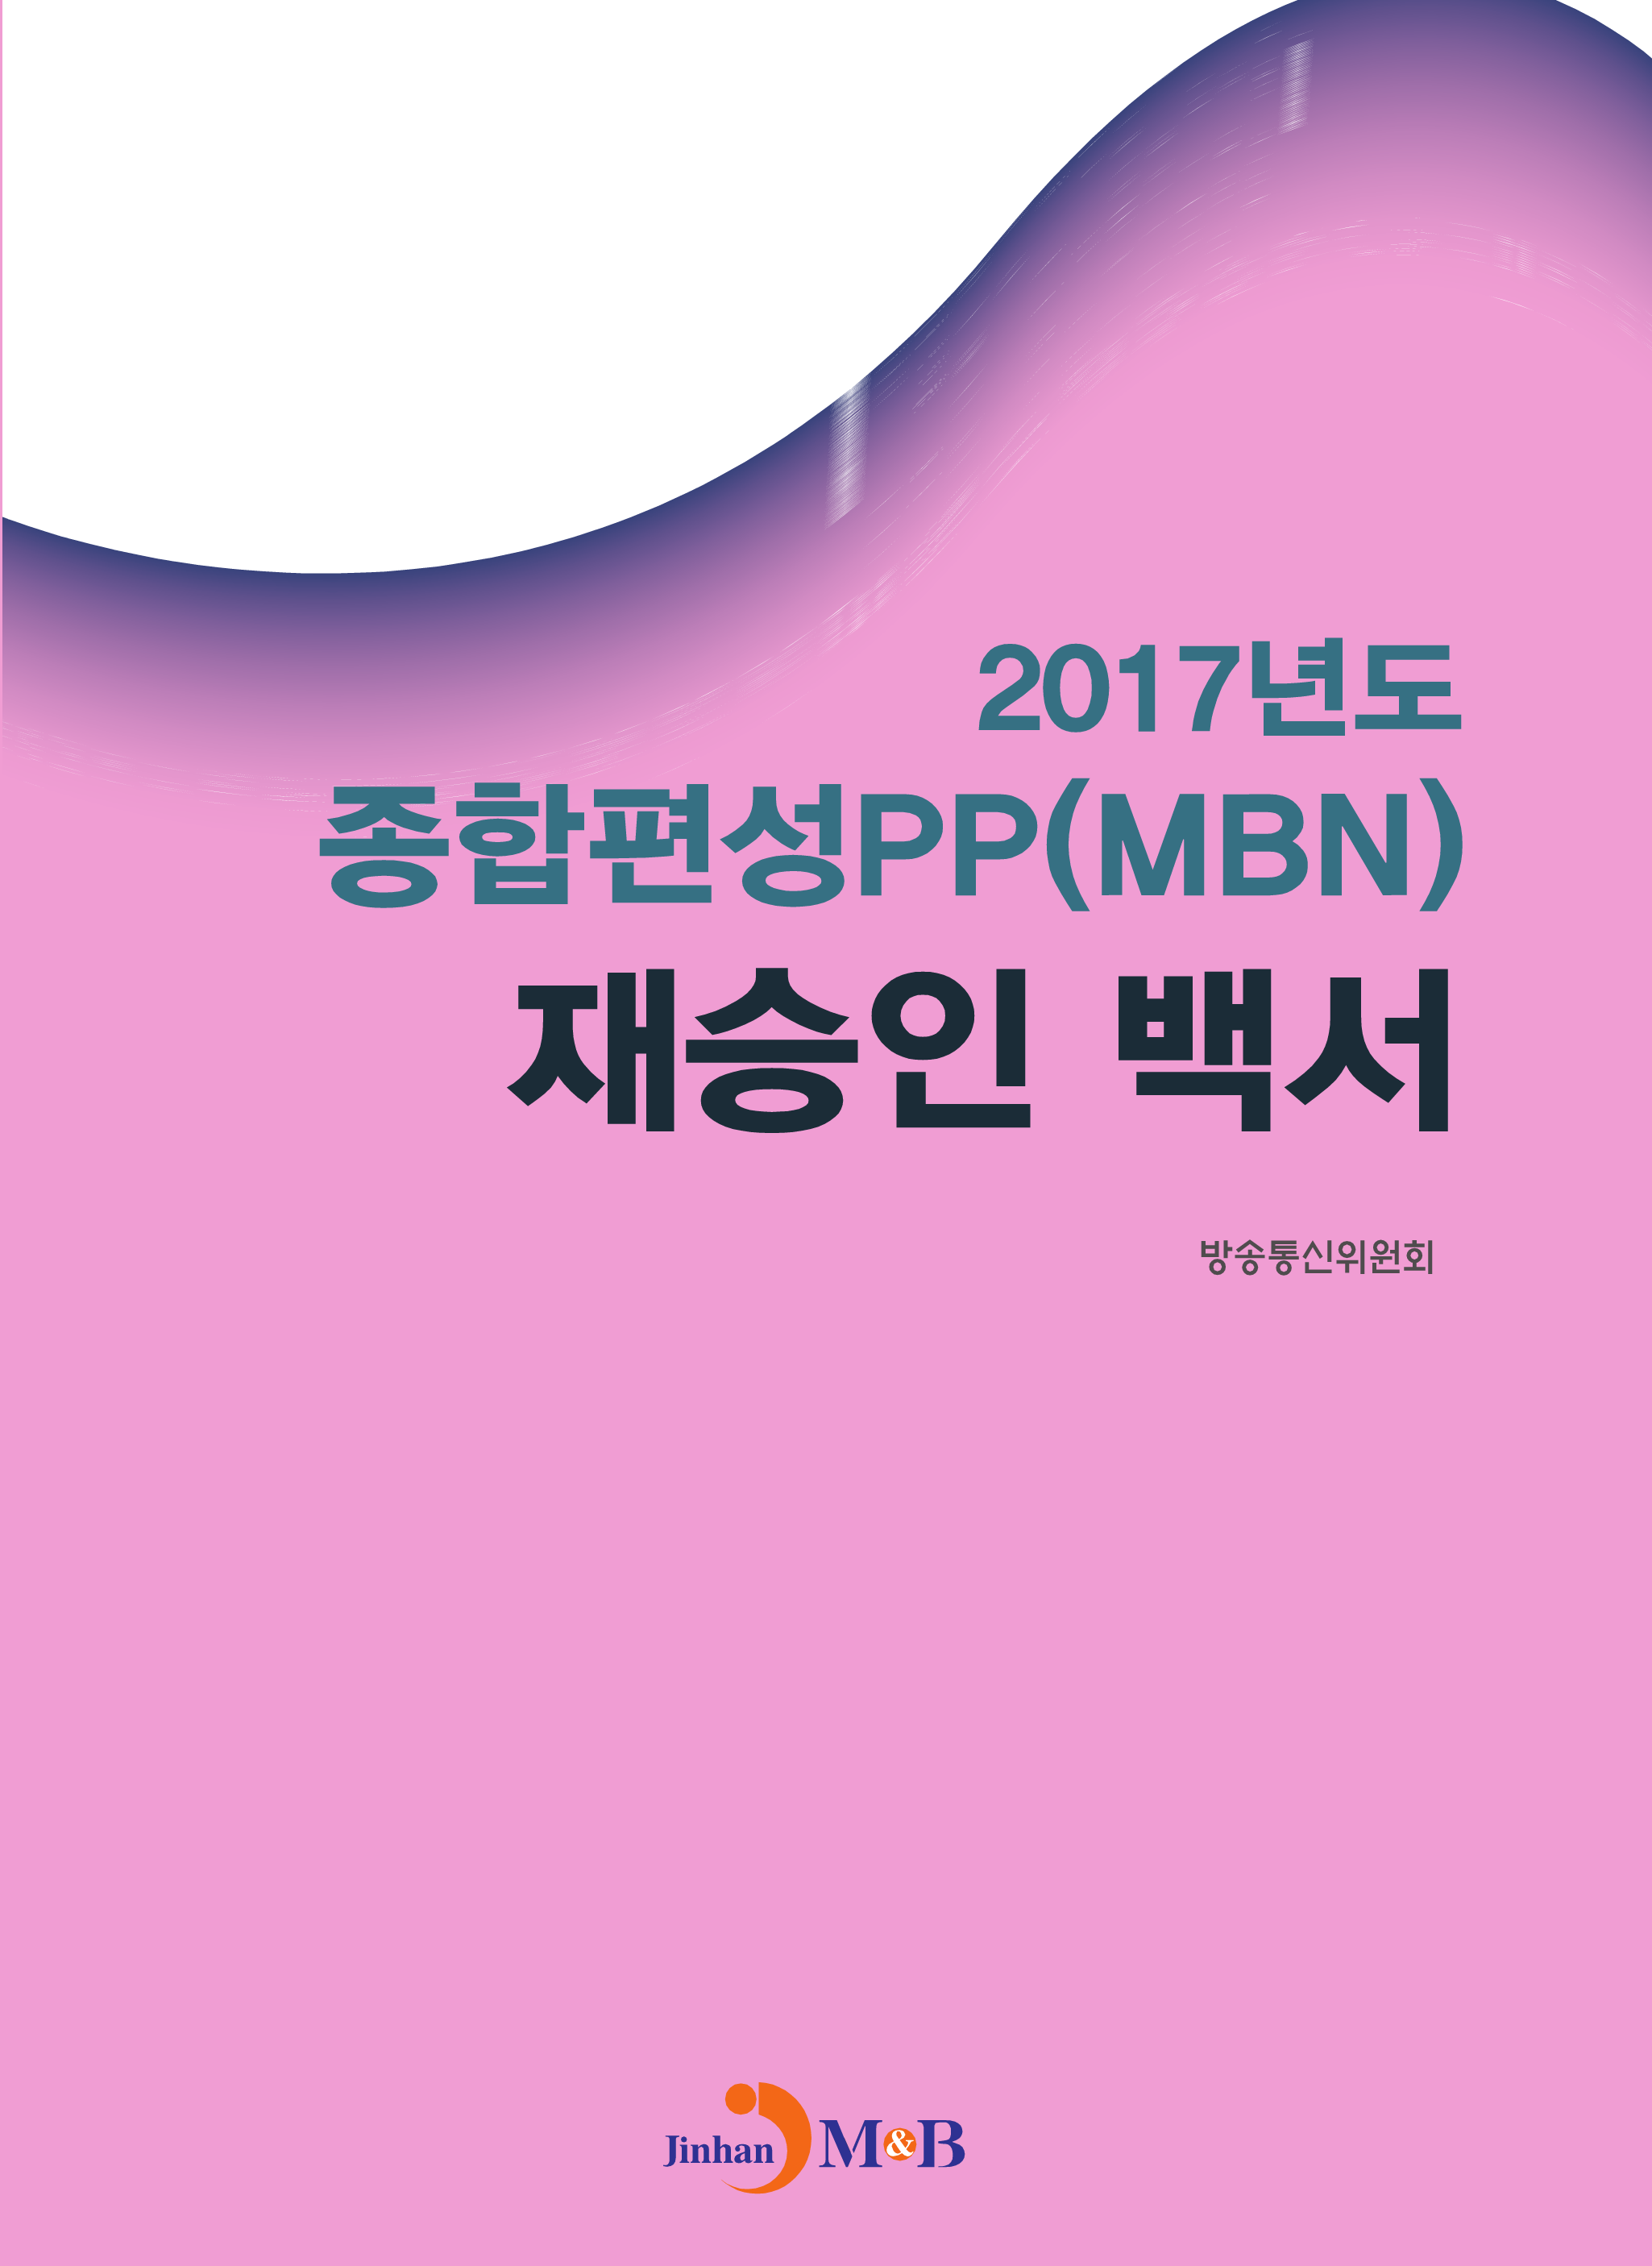 2017년도 종합편성PP(MBN) 재승인 백서